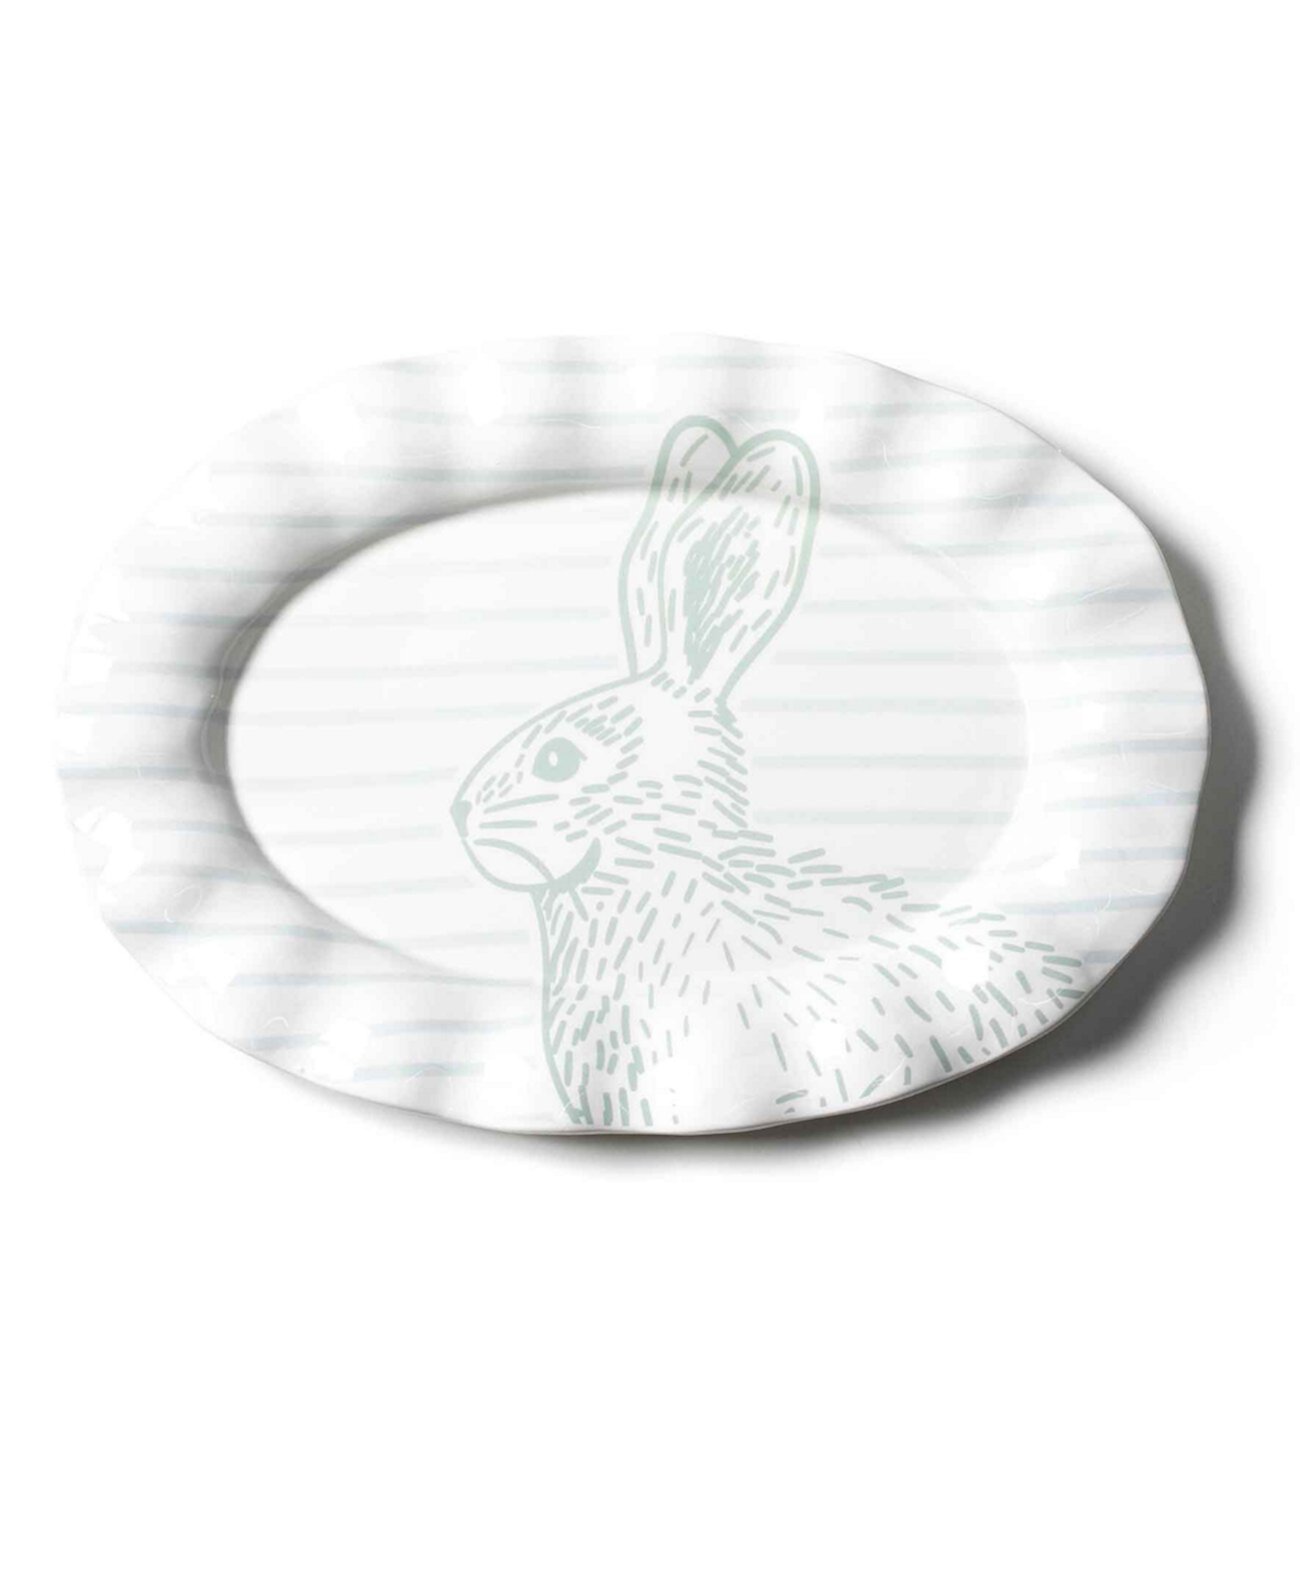 от Лауры Джонсон Овальное блюдо с крапчатым кроликом и рюшами Coton Colors